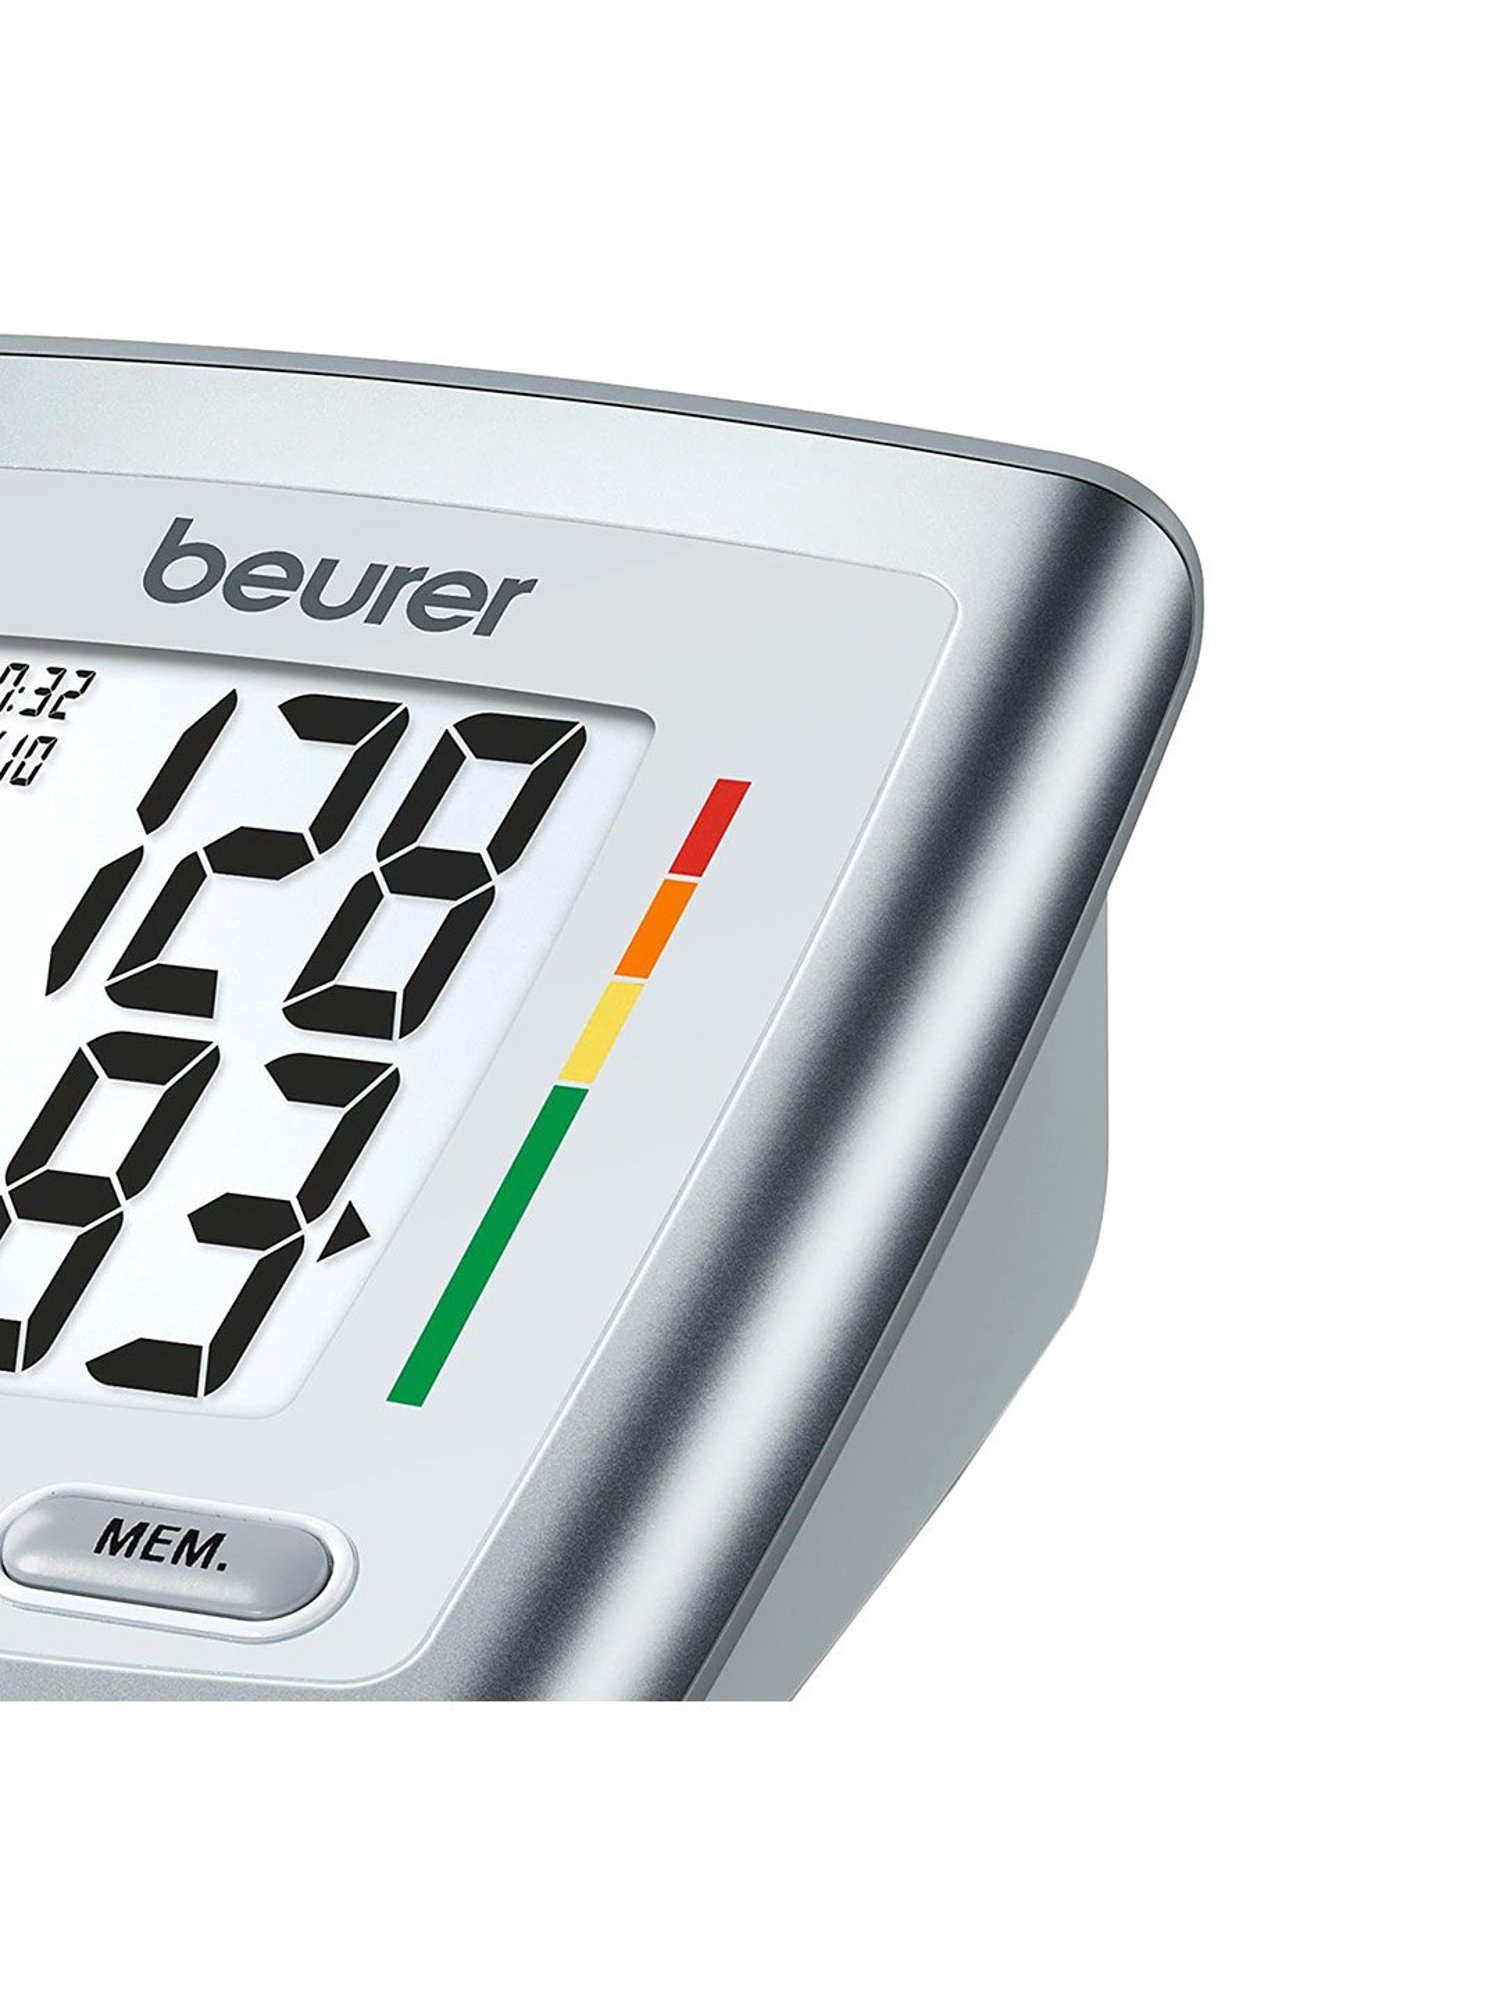 Beurer BM-35 Upper Arm Blood Pressure Monitor